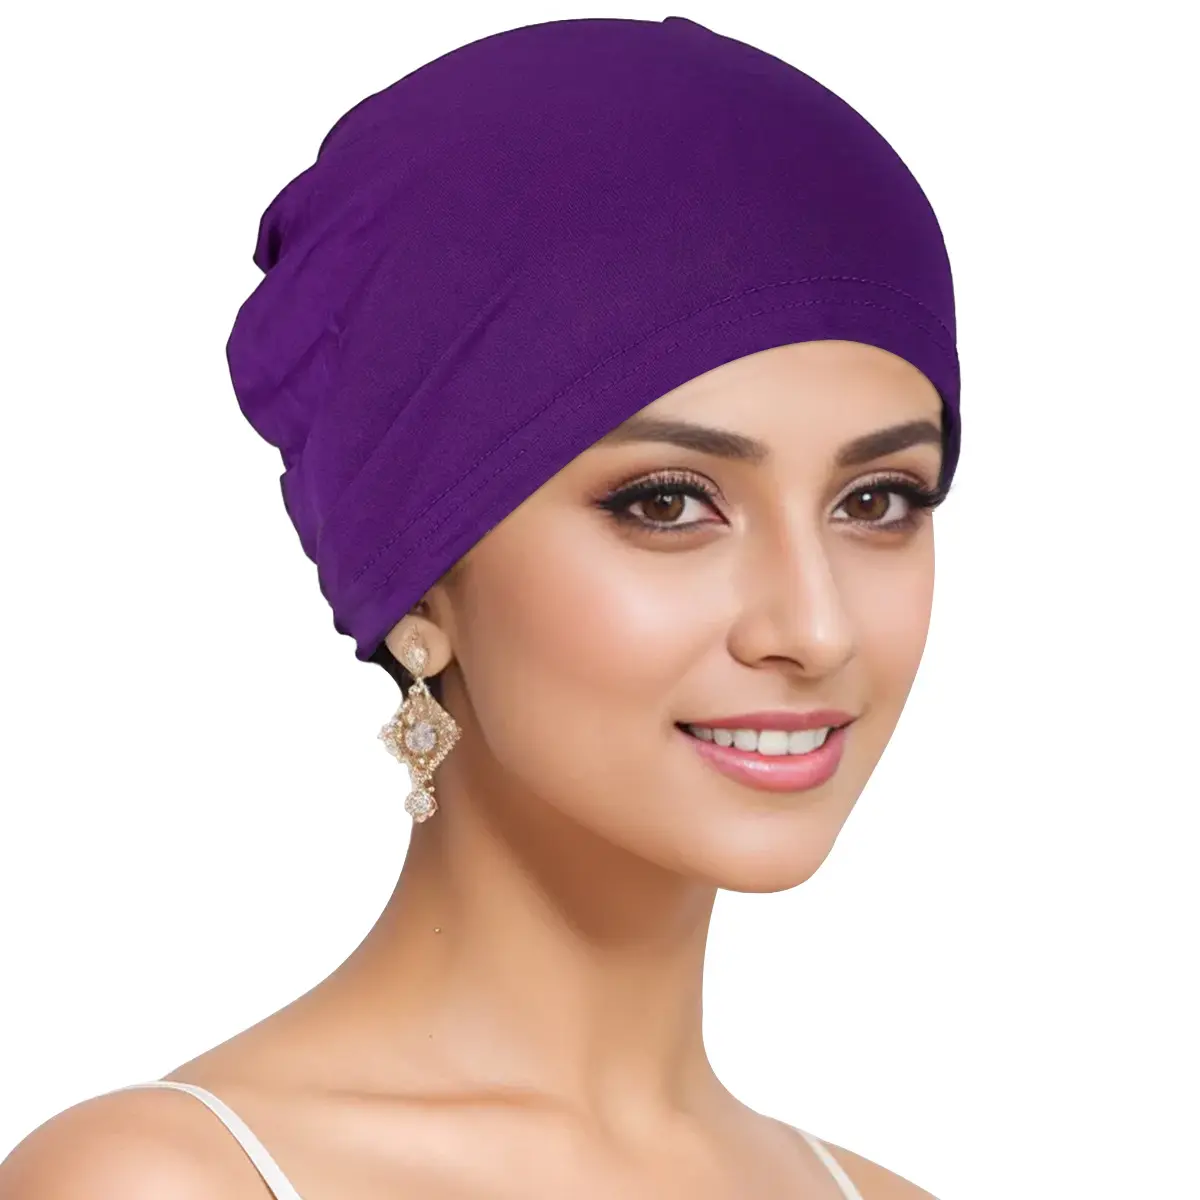 Touca Hijab para mulheres muçulmanas FF2490, boné com turbante islâmico, touca para mulheres, touca longa para Hijab